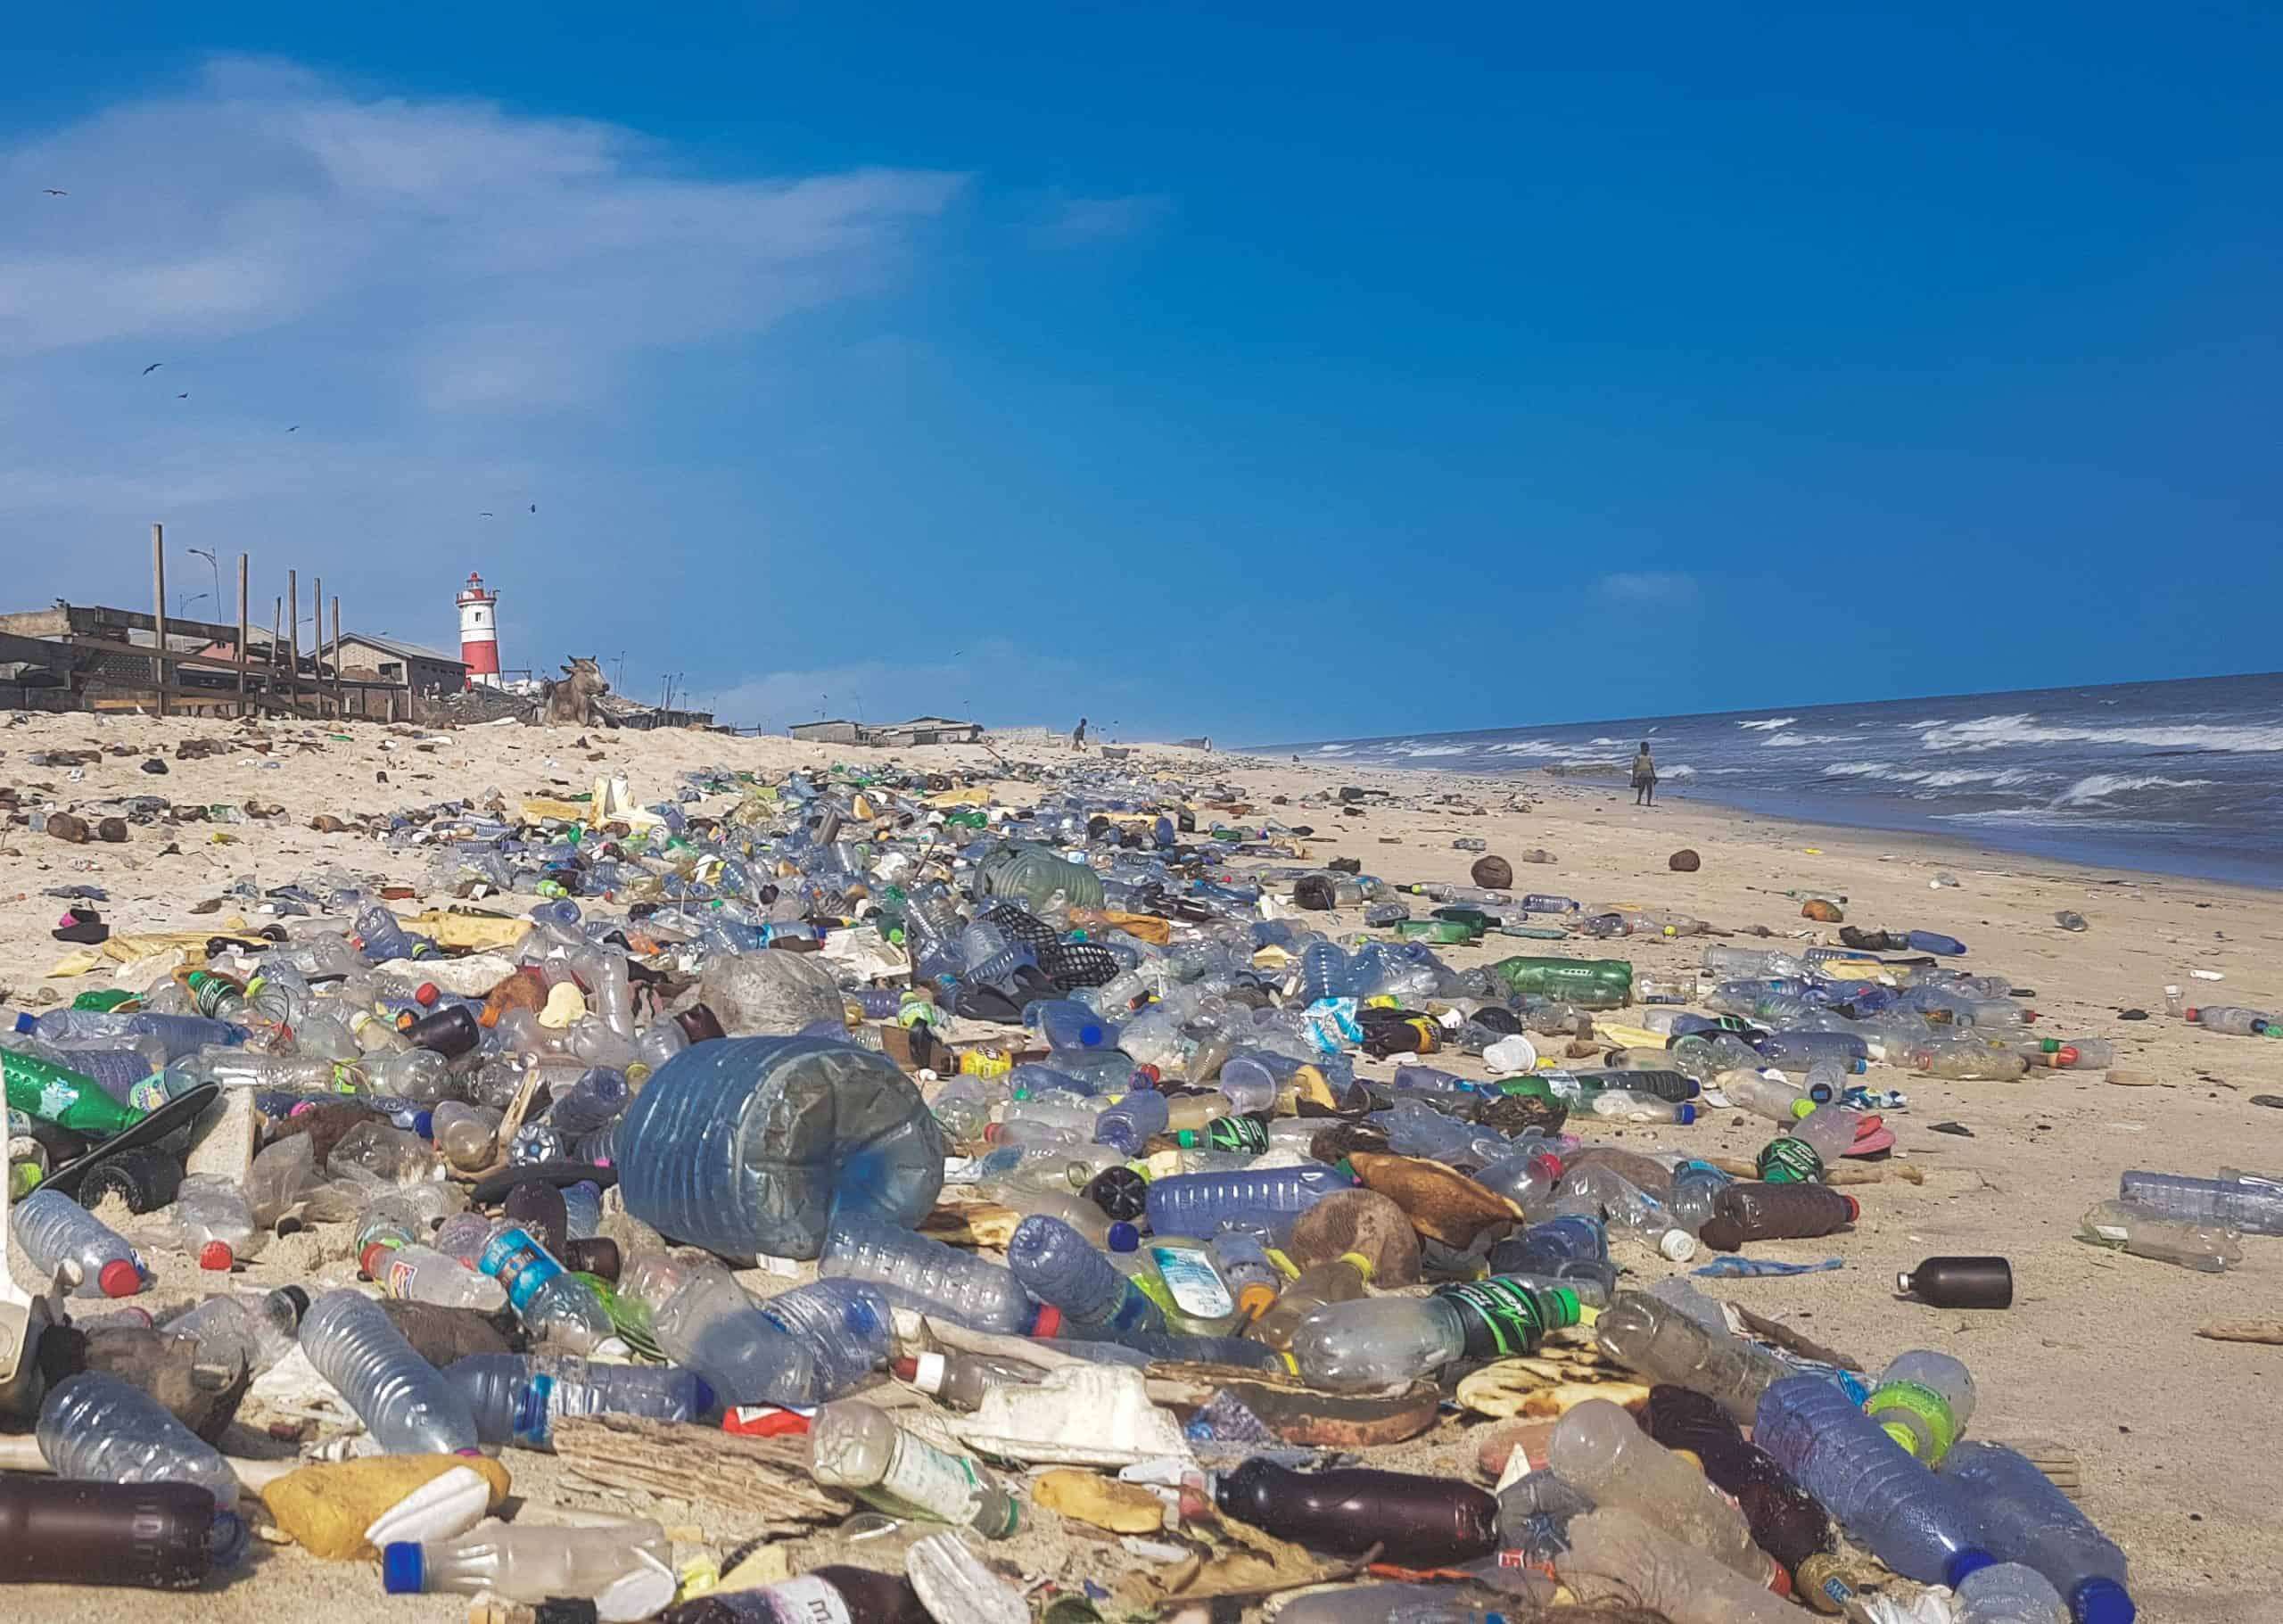 इनोवेशन: इंग्लैंड के वैज्ञानिकों ने बनाए ऐसे एंजाइम्स जो प्लास्टिक को कर देंगे नष्ट